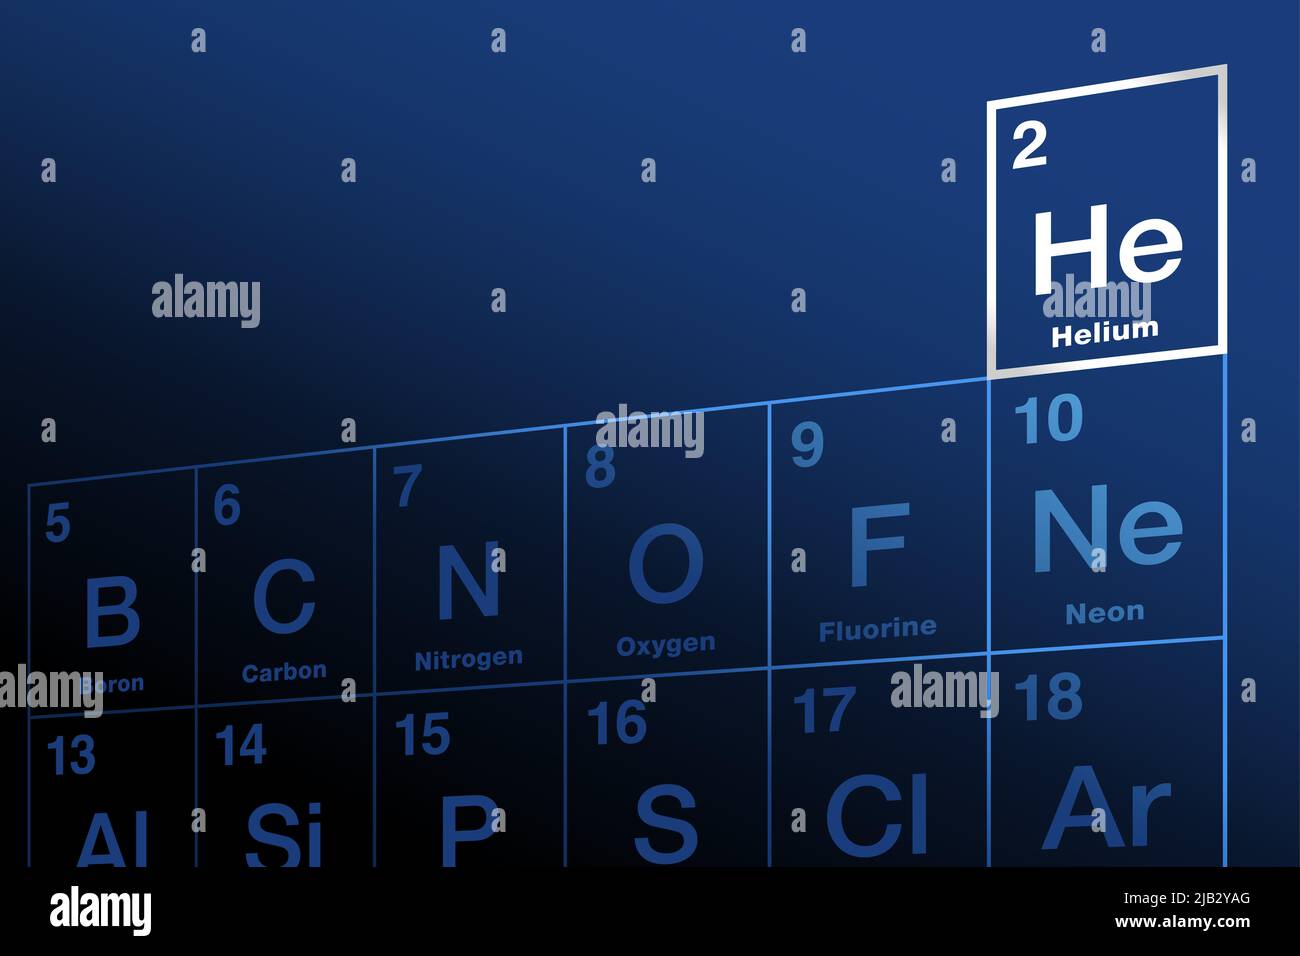 Helium im Periodensystem der Elemente. Chemisches Element mit Symbol Al und Ordnungszahl 2. Inertes, monatomares Edelgas. Stockfoto